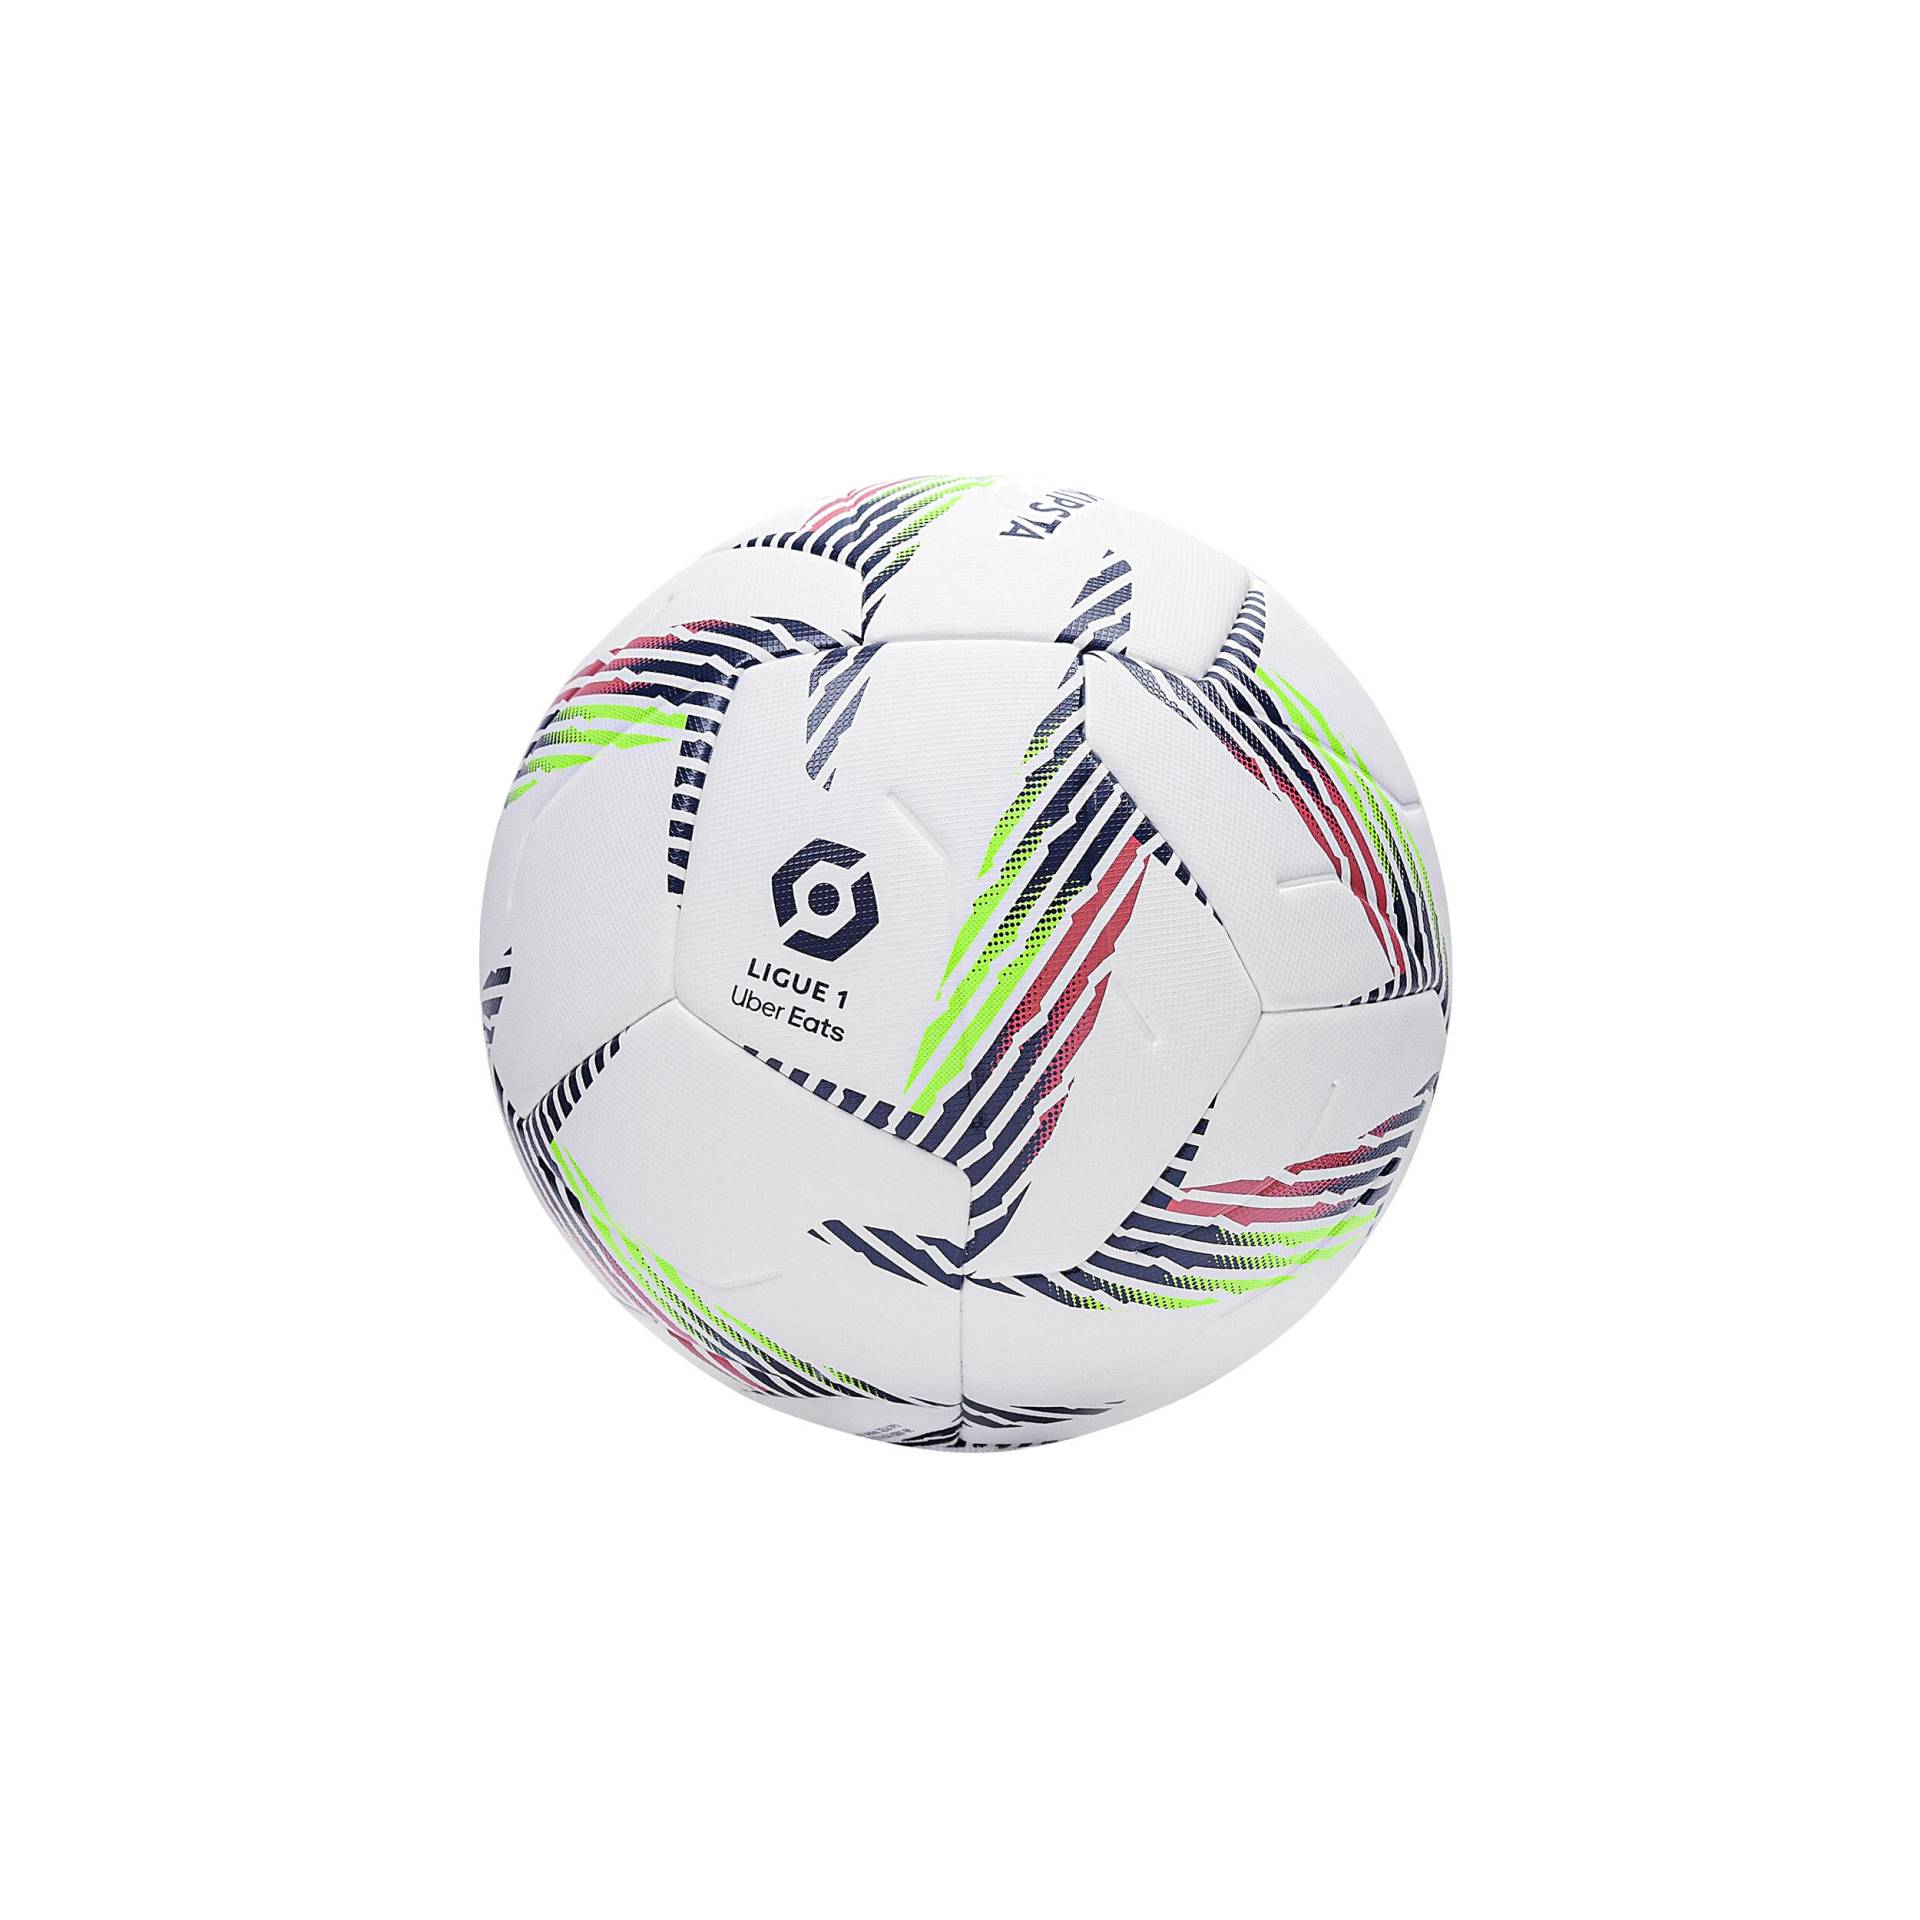 Fussball Grösse 5 FIFA Quality Pro wärmegeklebt - F900 weiss von KIPSTA